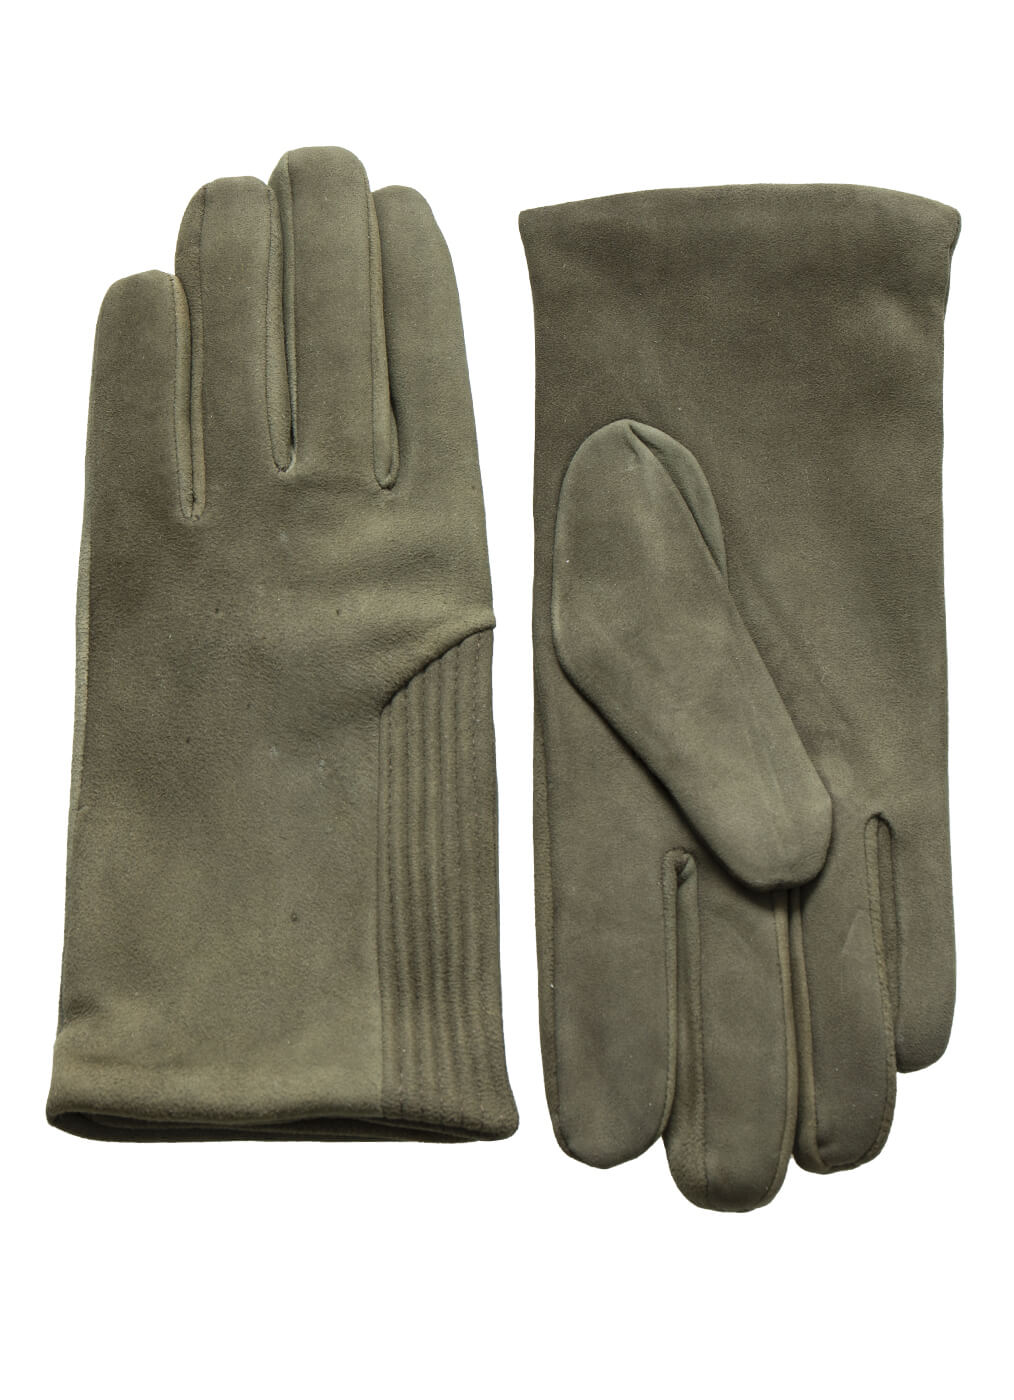 Deer Leather Glove “Goodwood”, olive